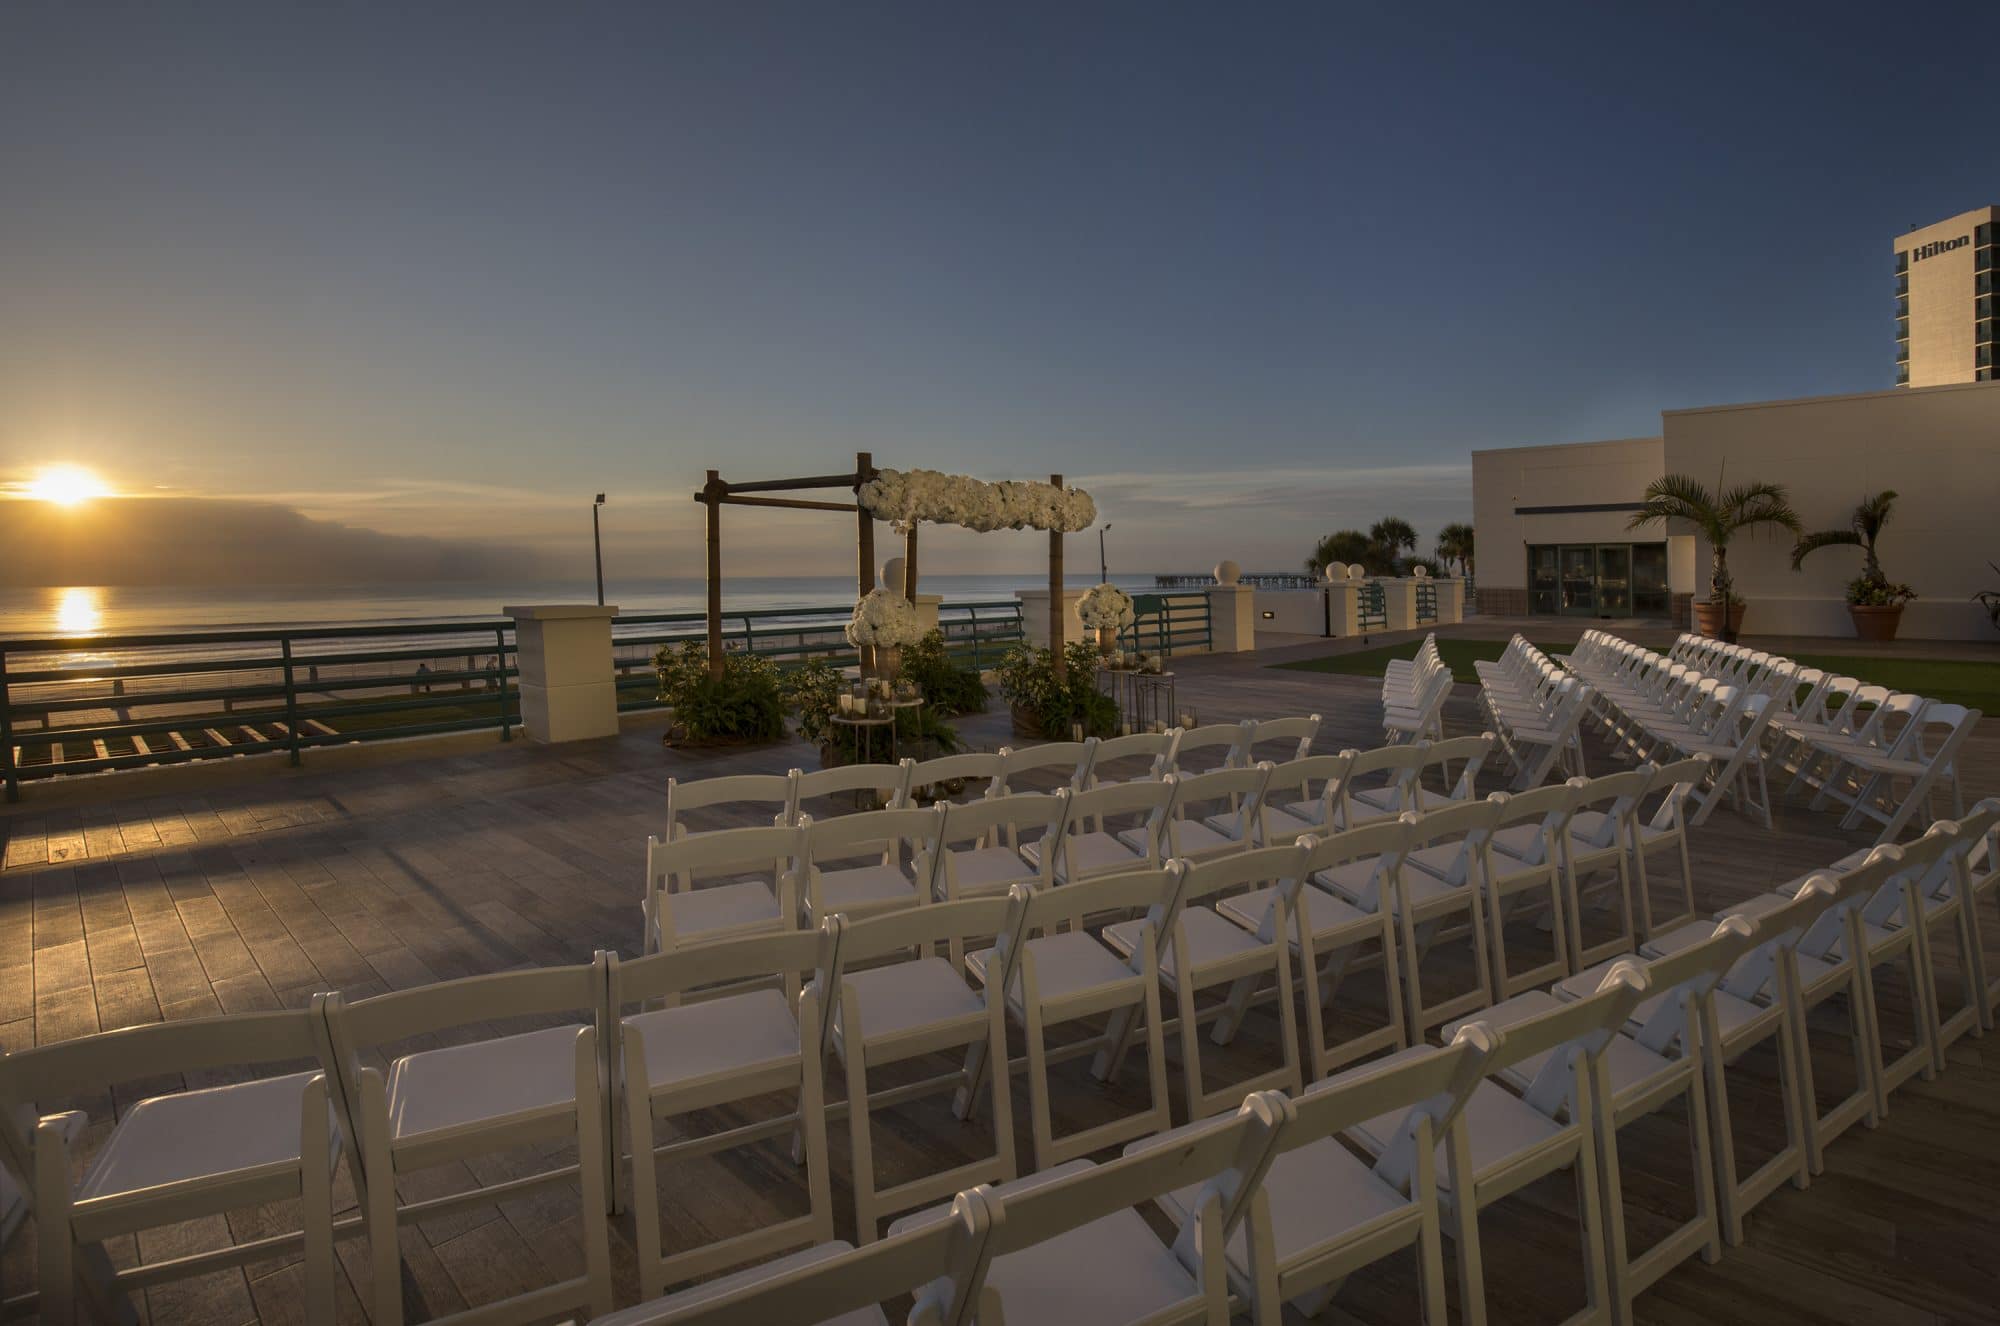 Hilton Daytona Beach Oceanfront Resort - wedding ceremony set up on patio overlooking the ocean